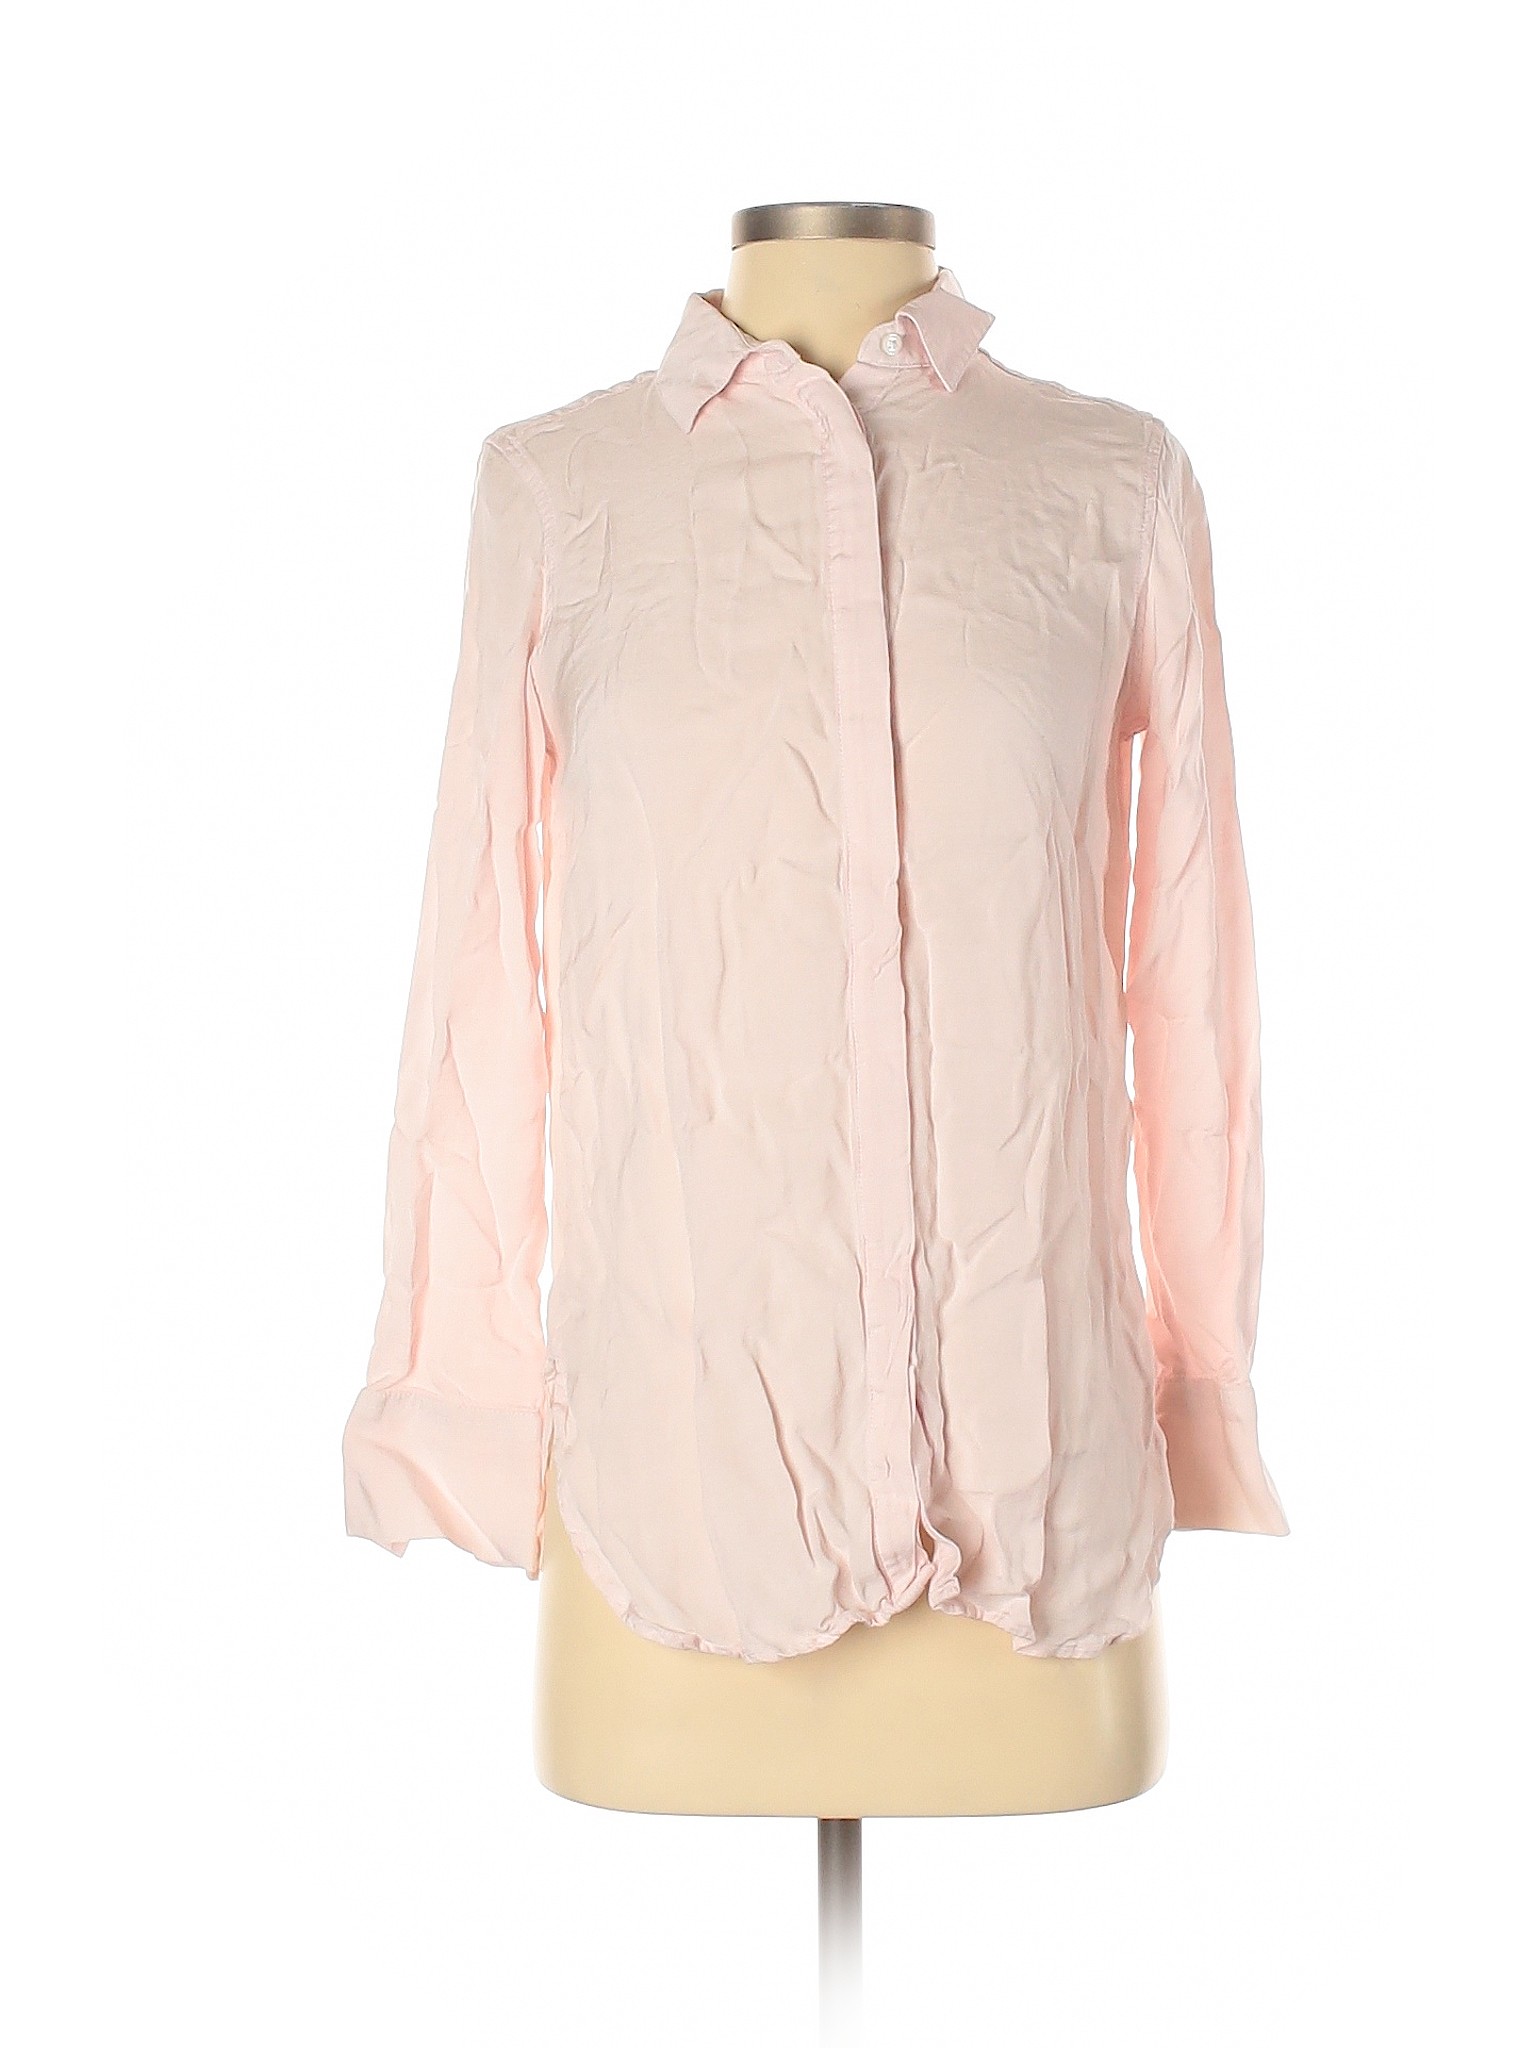 Banana Republic Women Pink Long Sleeve Button-Down Shirt XS | eBay